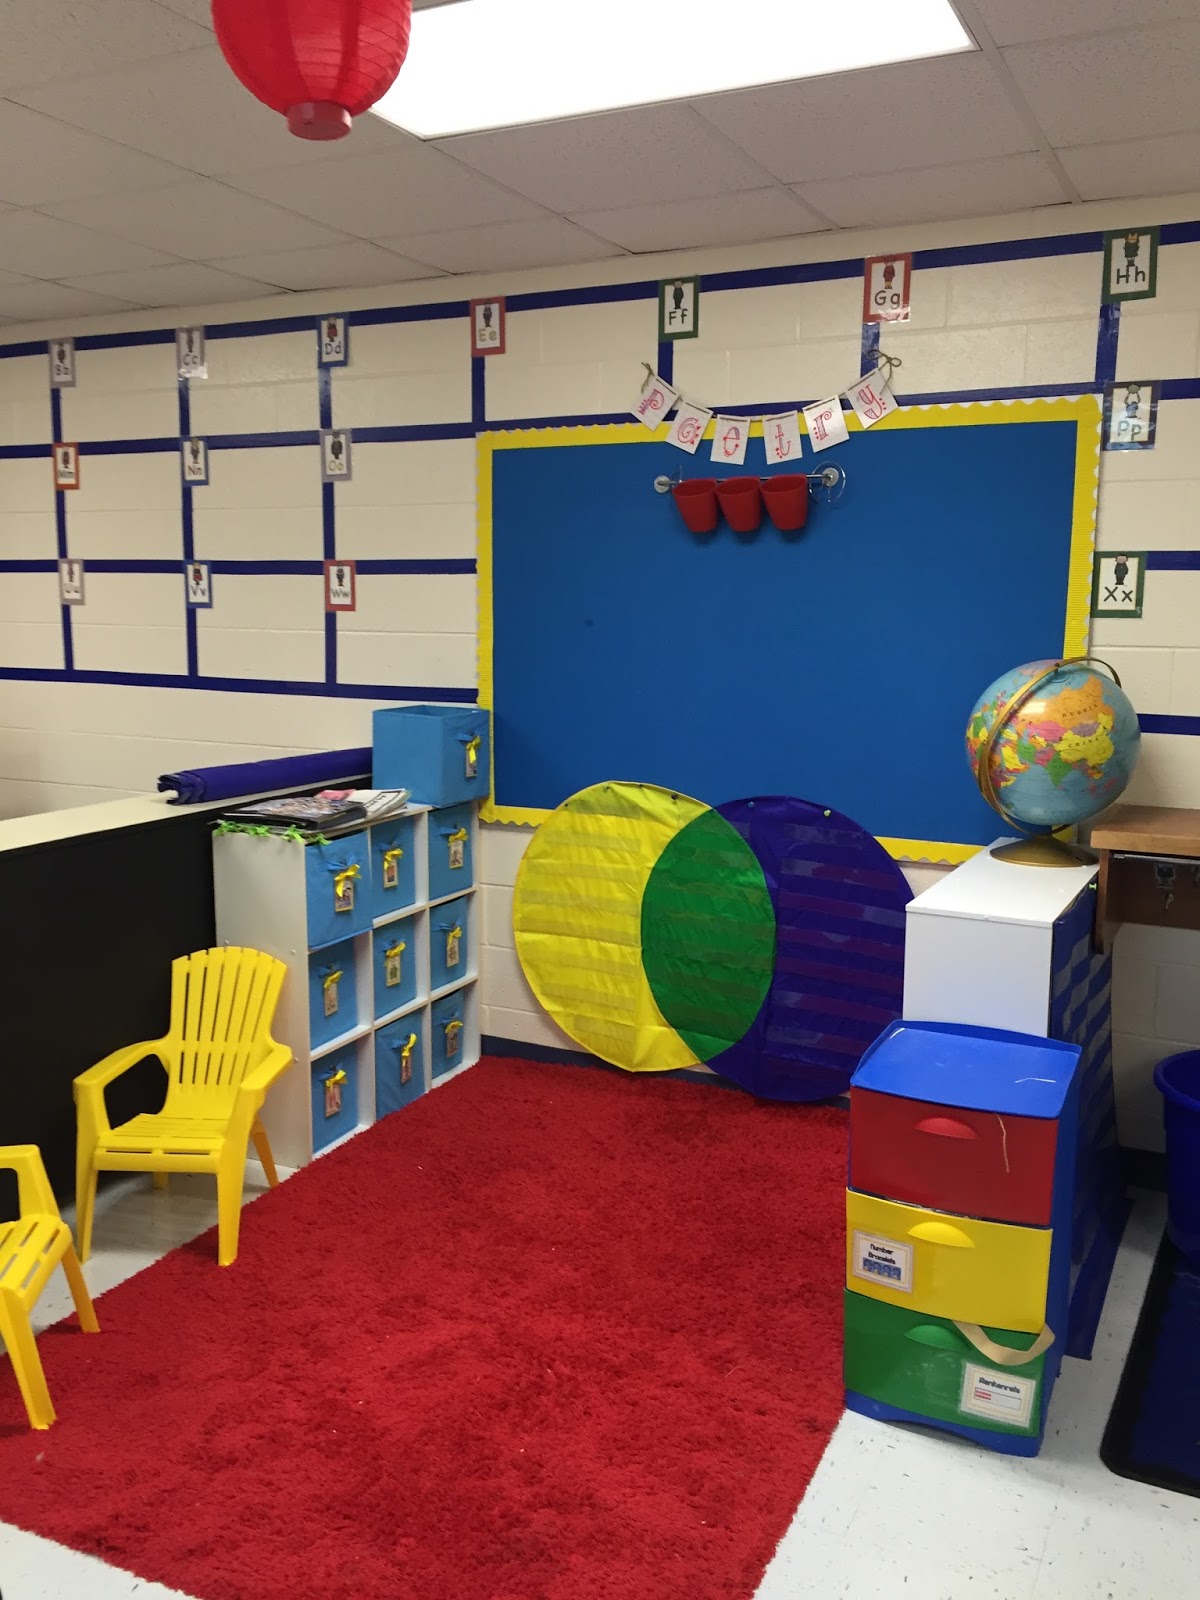 Ms. Ray's Classroom: My Classroom